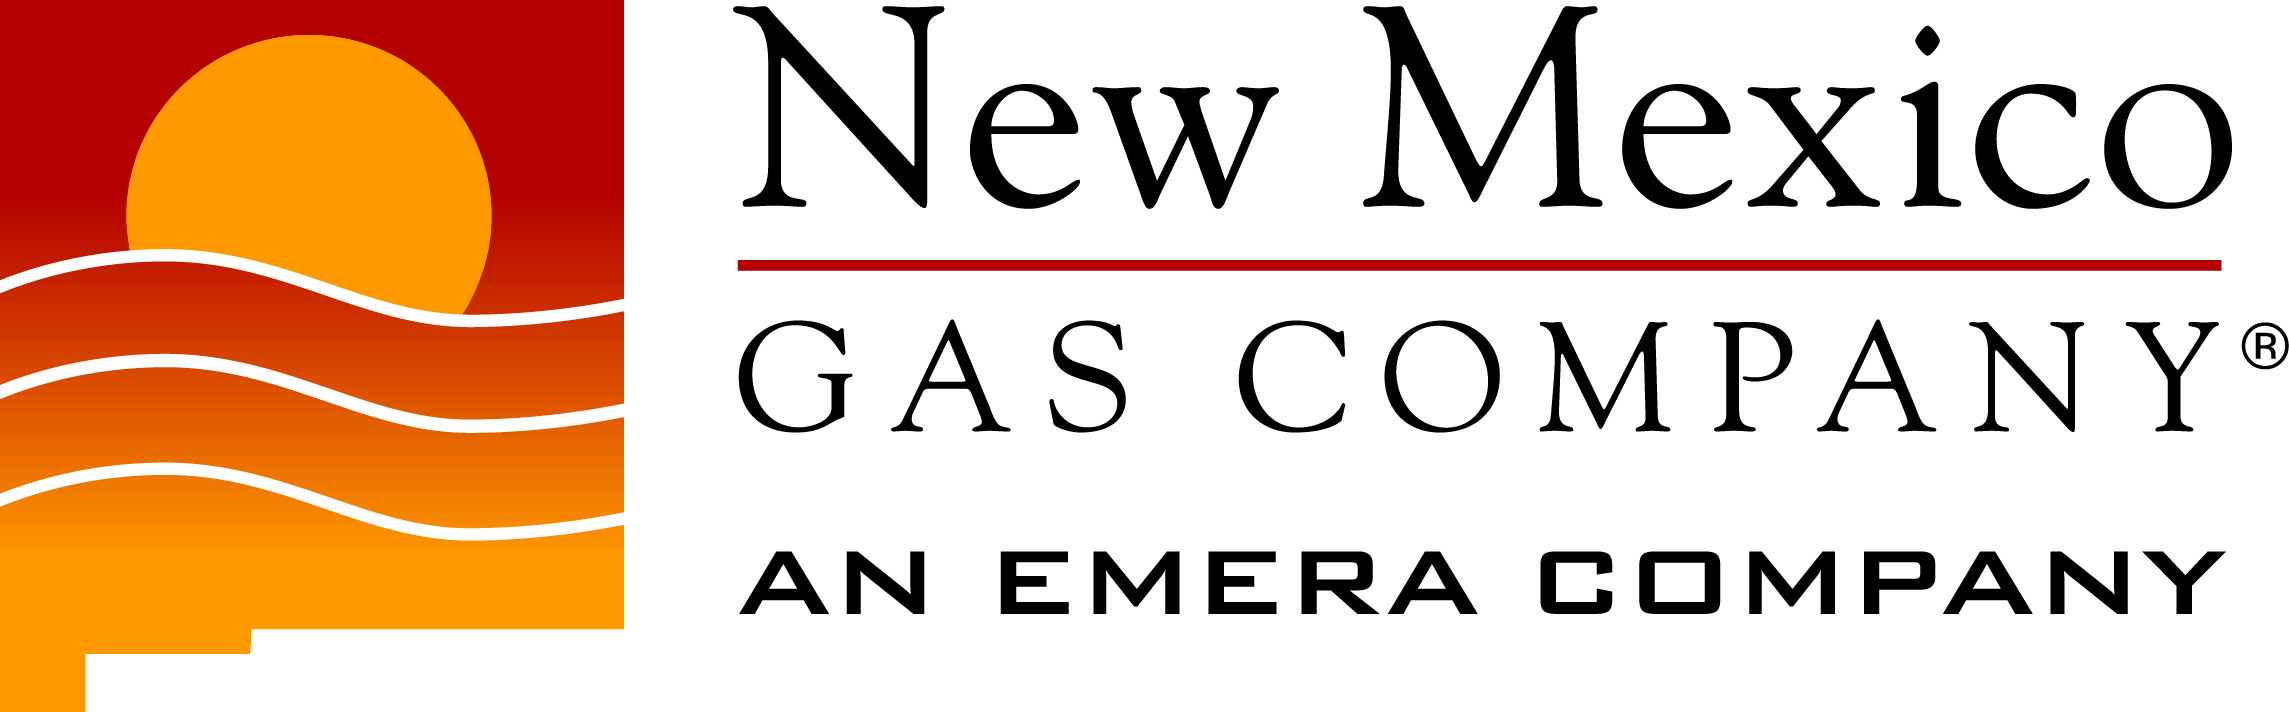 New Mexico Gas Company's Logo